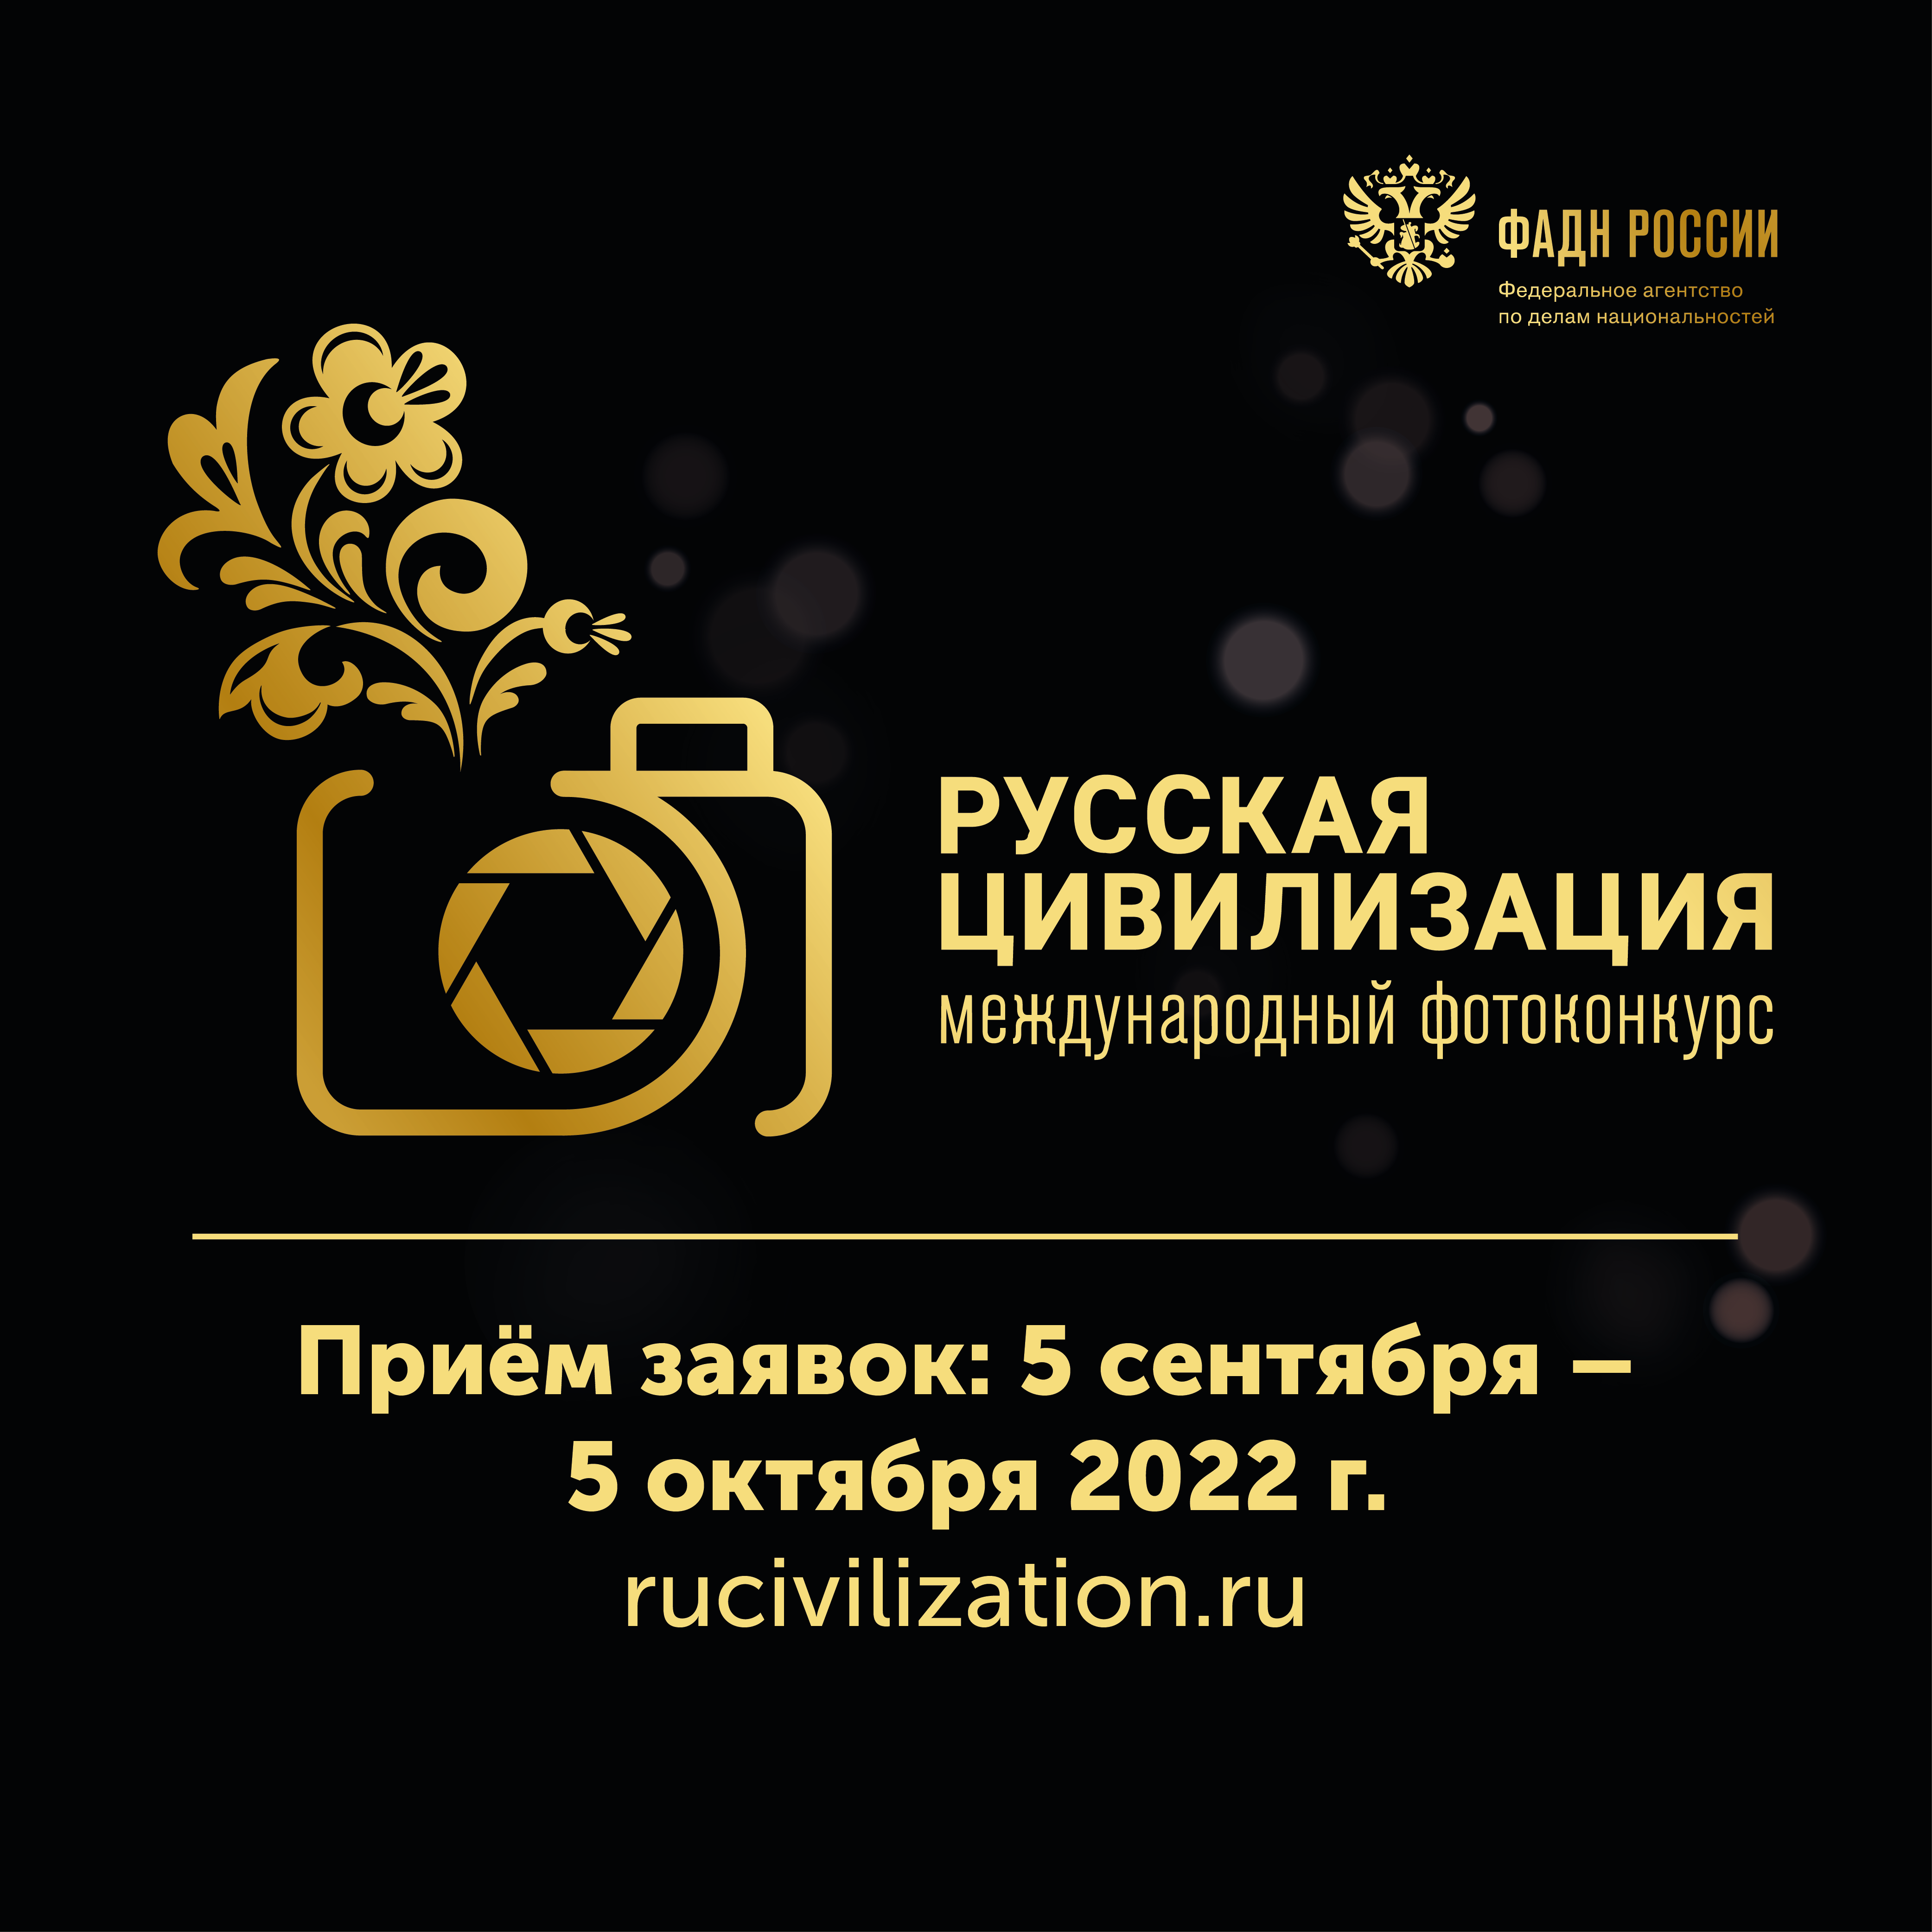 Федеральное агентство по делам национальностей с 5 сентября по 5 октября 2022 года проводит VI Международный фотоконкурс «Русская цивилизация»